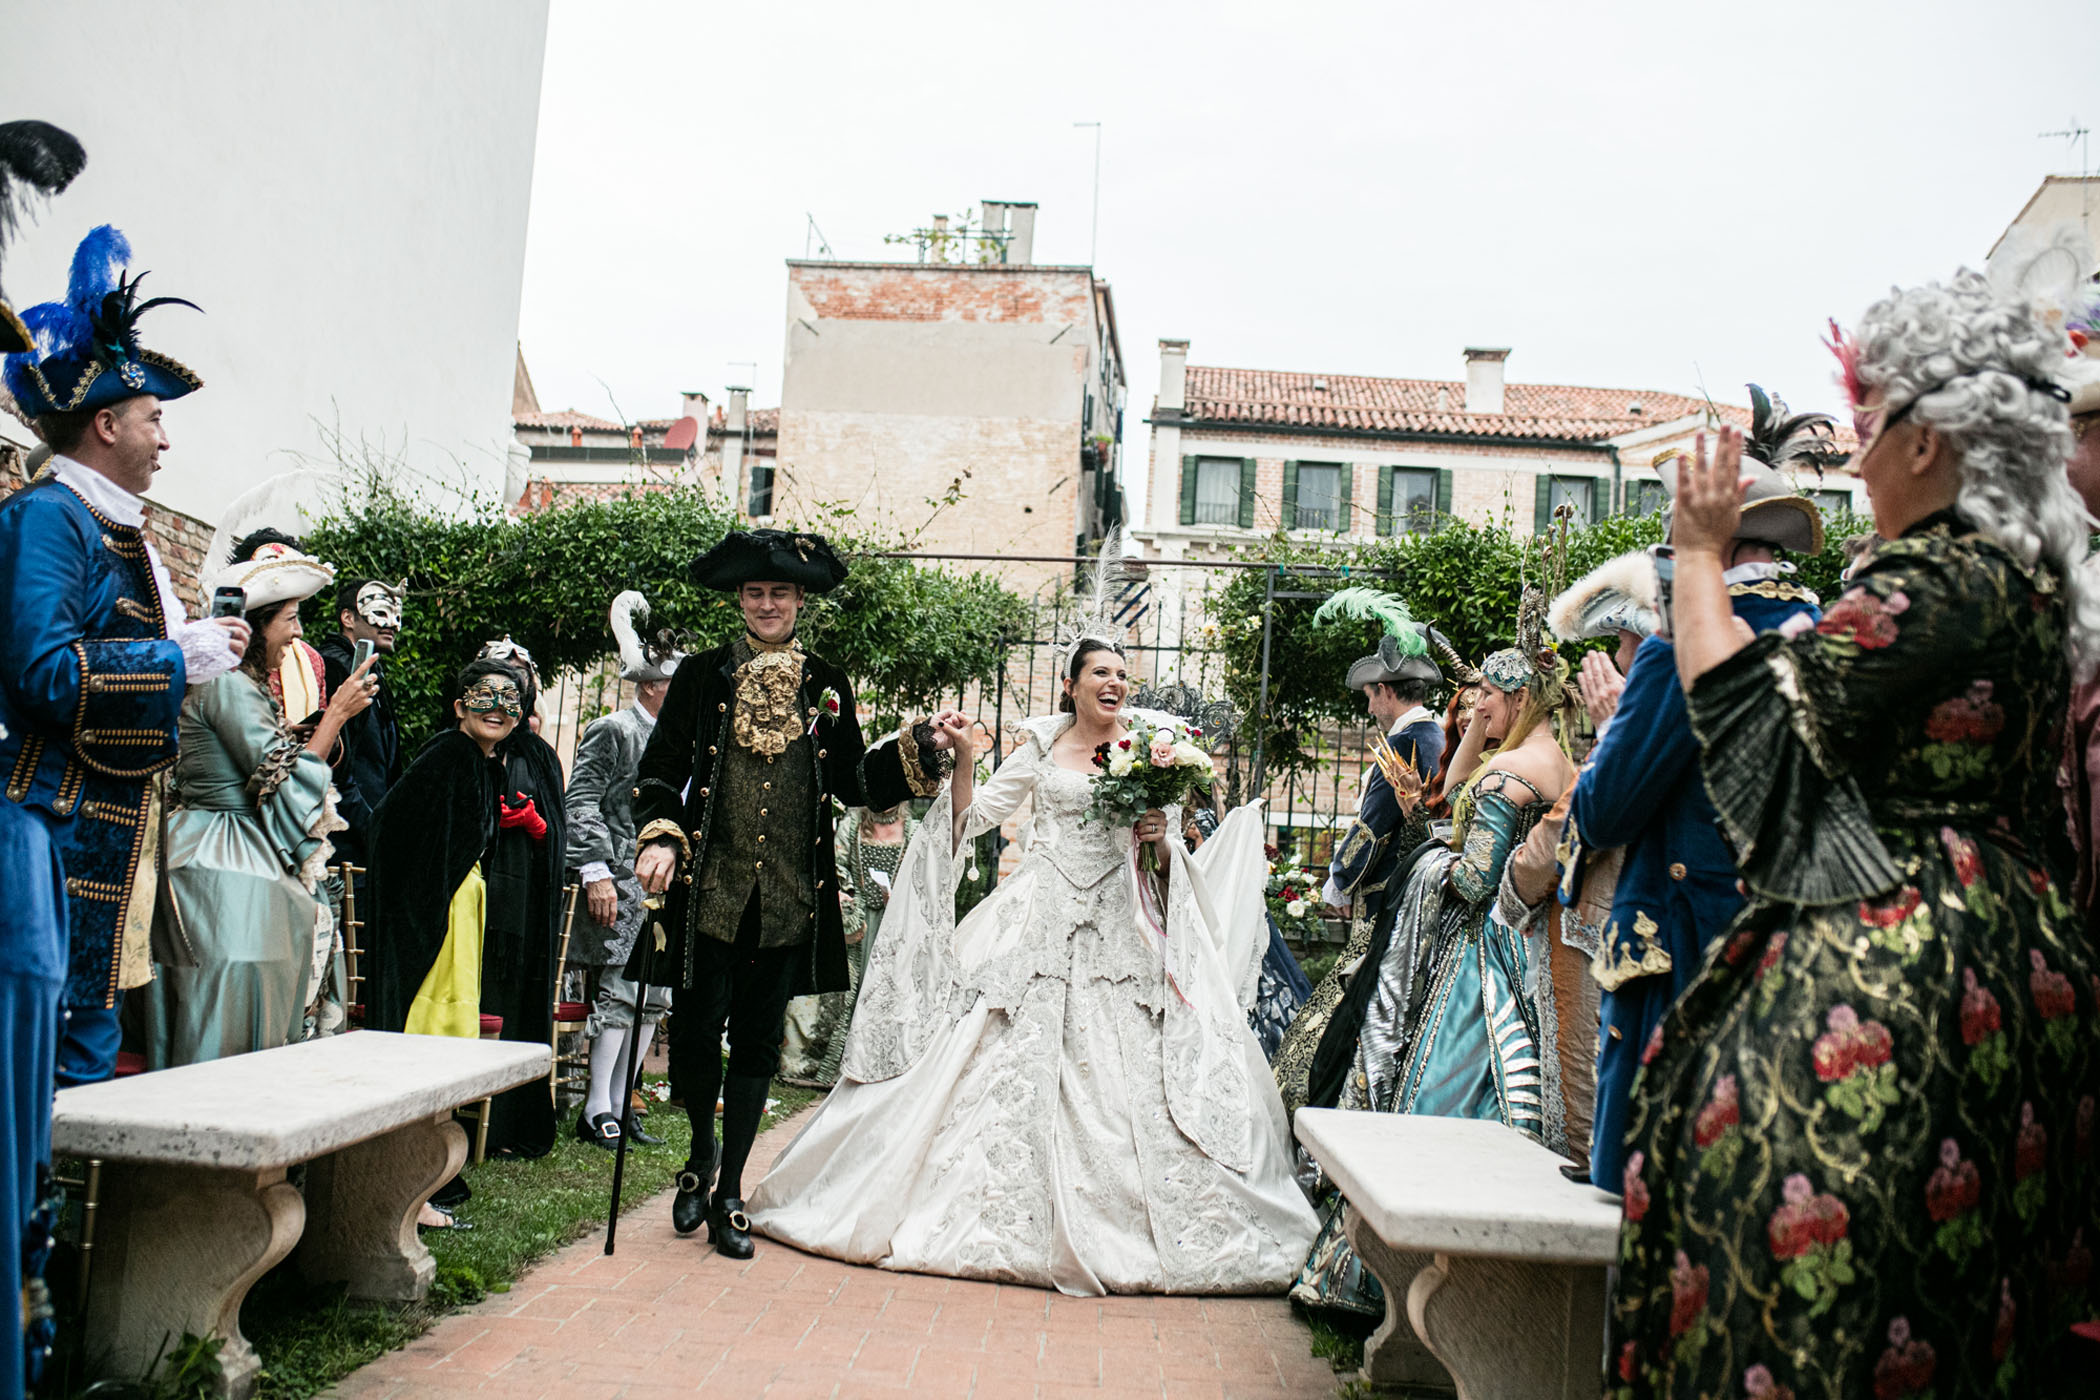 Venetian Carnival Wedding Spectacular